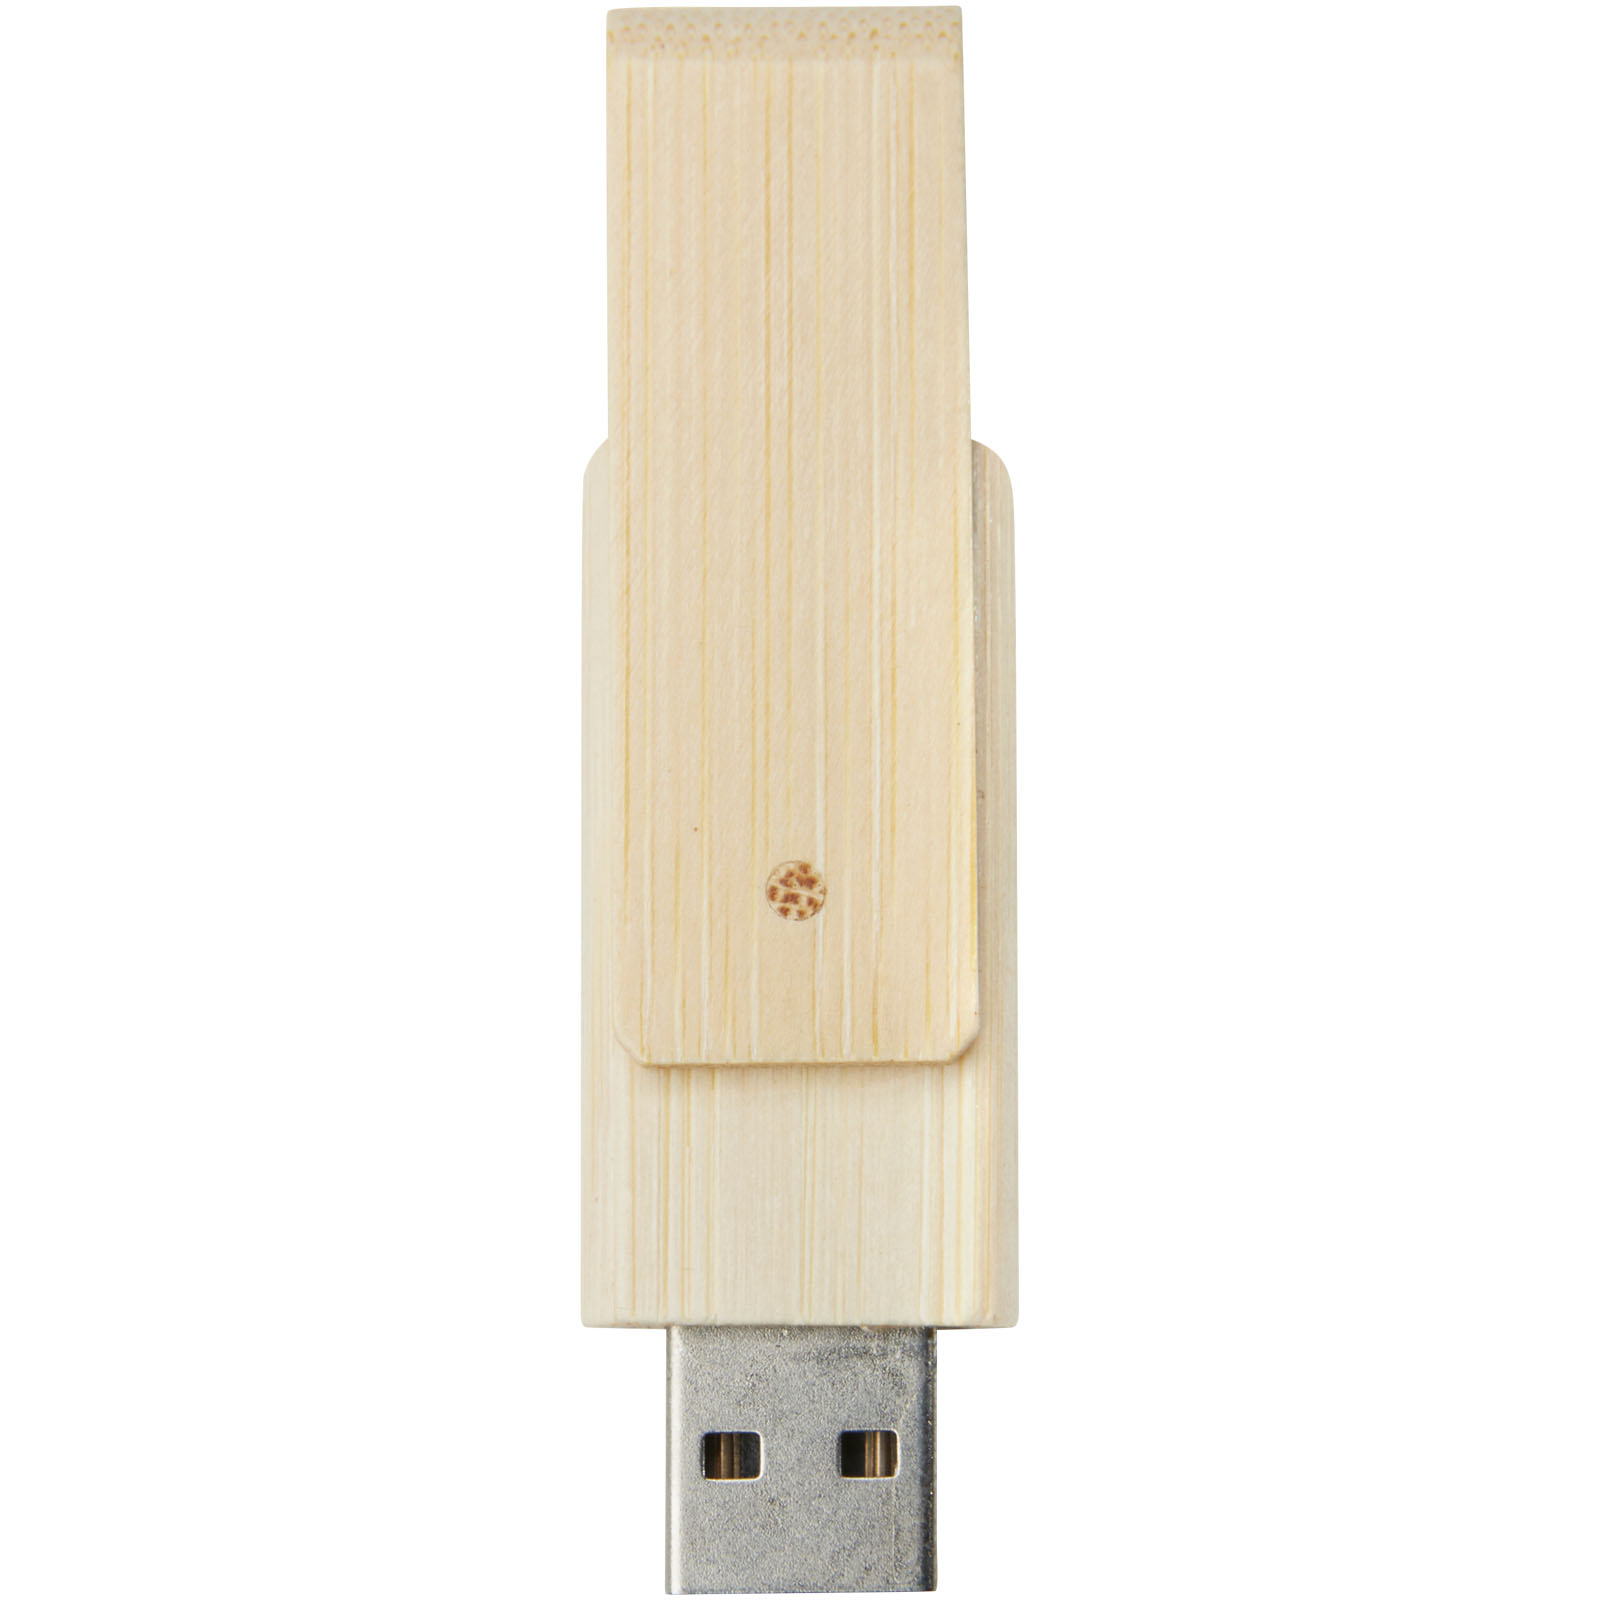 Clés USB publicitaires - Clé USB Rotate 16 Go en bambou - 1